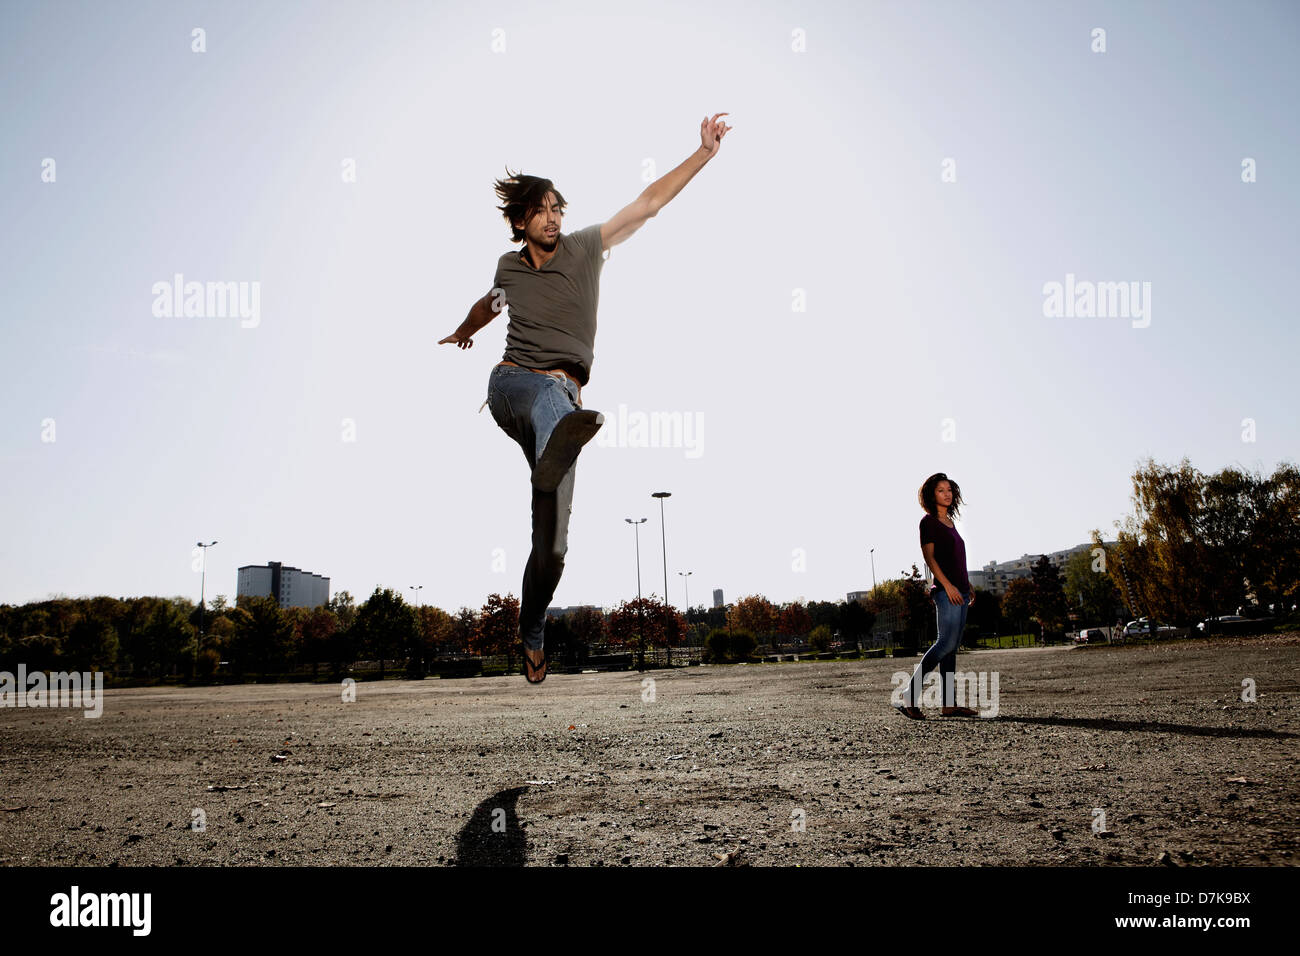 Deutschland, Köln, Mann springt im Feld, Frau im Hintergrund Stockfoto